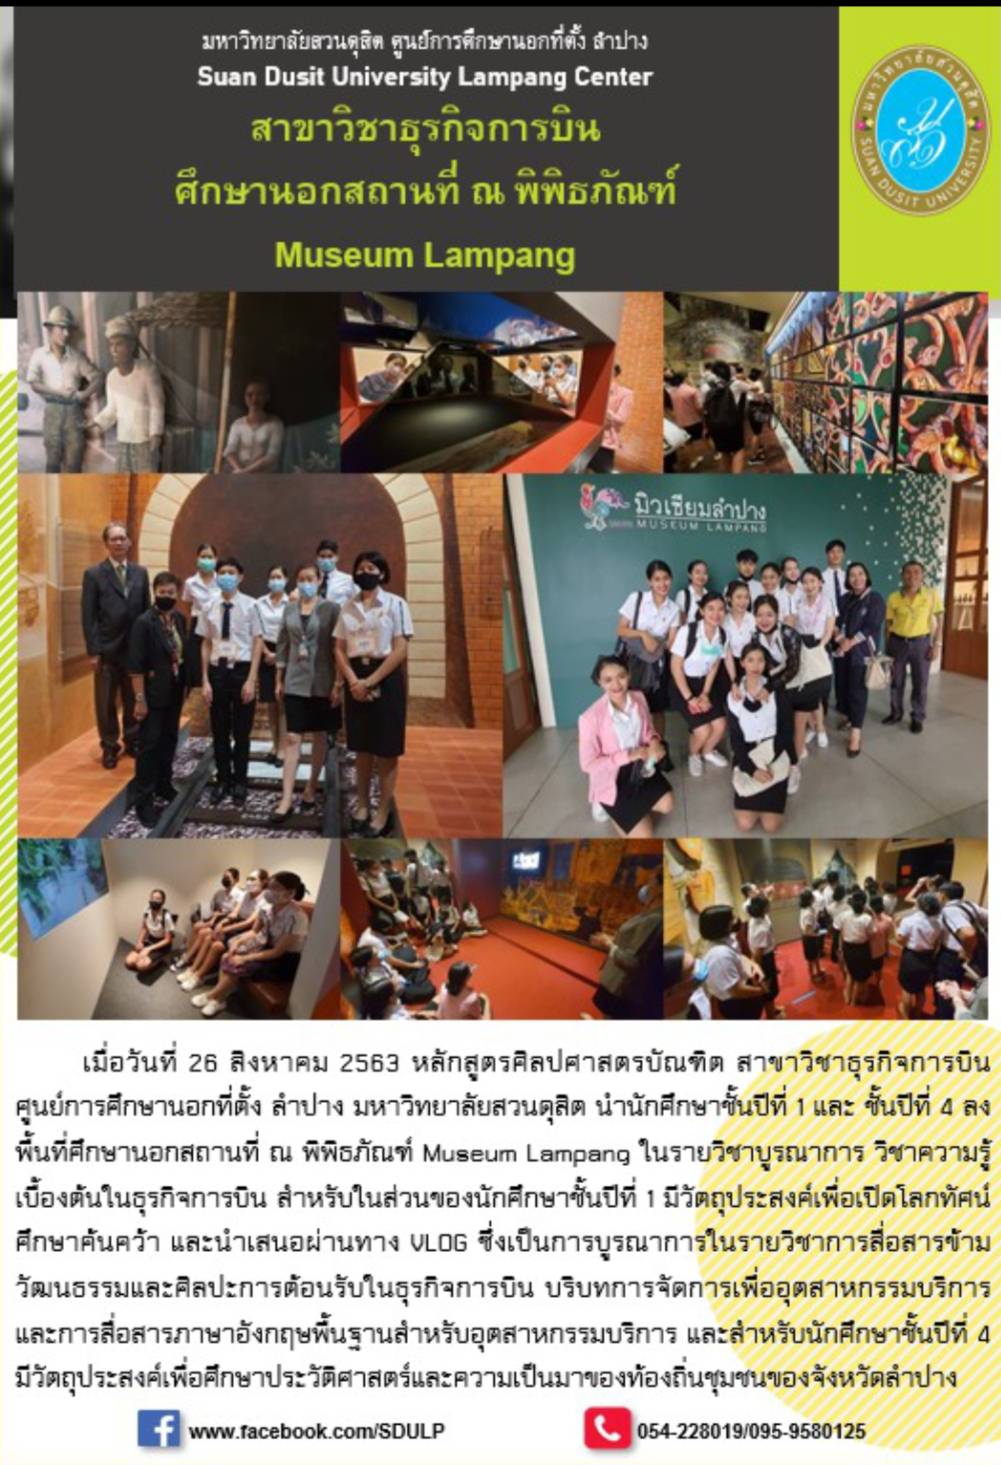 สาขาวิชาธุรกิจการบินศึกษานอกสถานที่ ณ พิพิธภัณฑ์ Museum Lampang